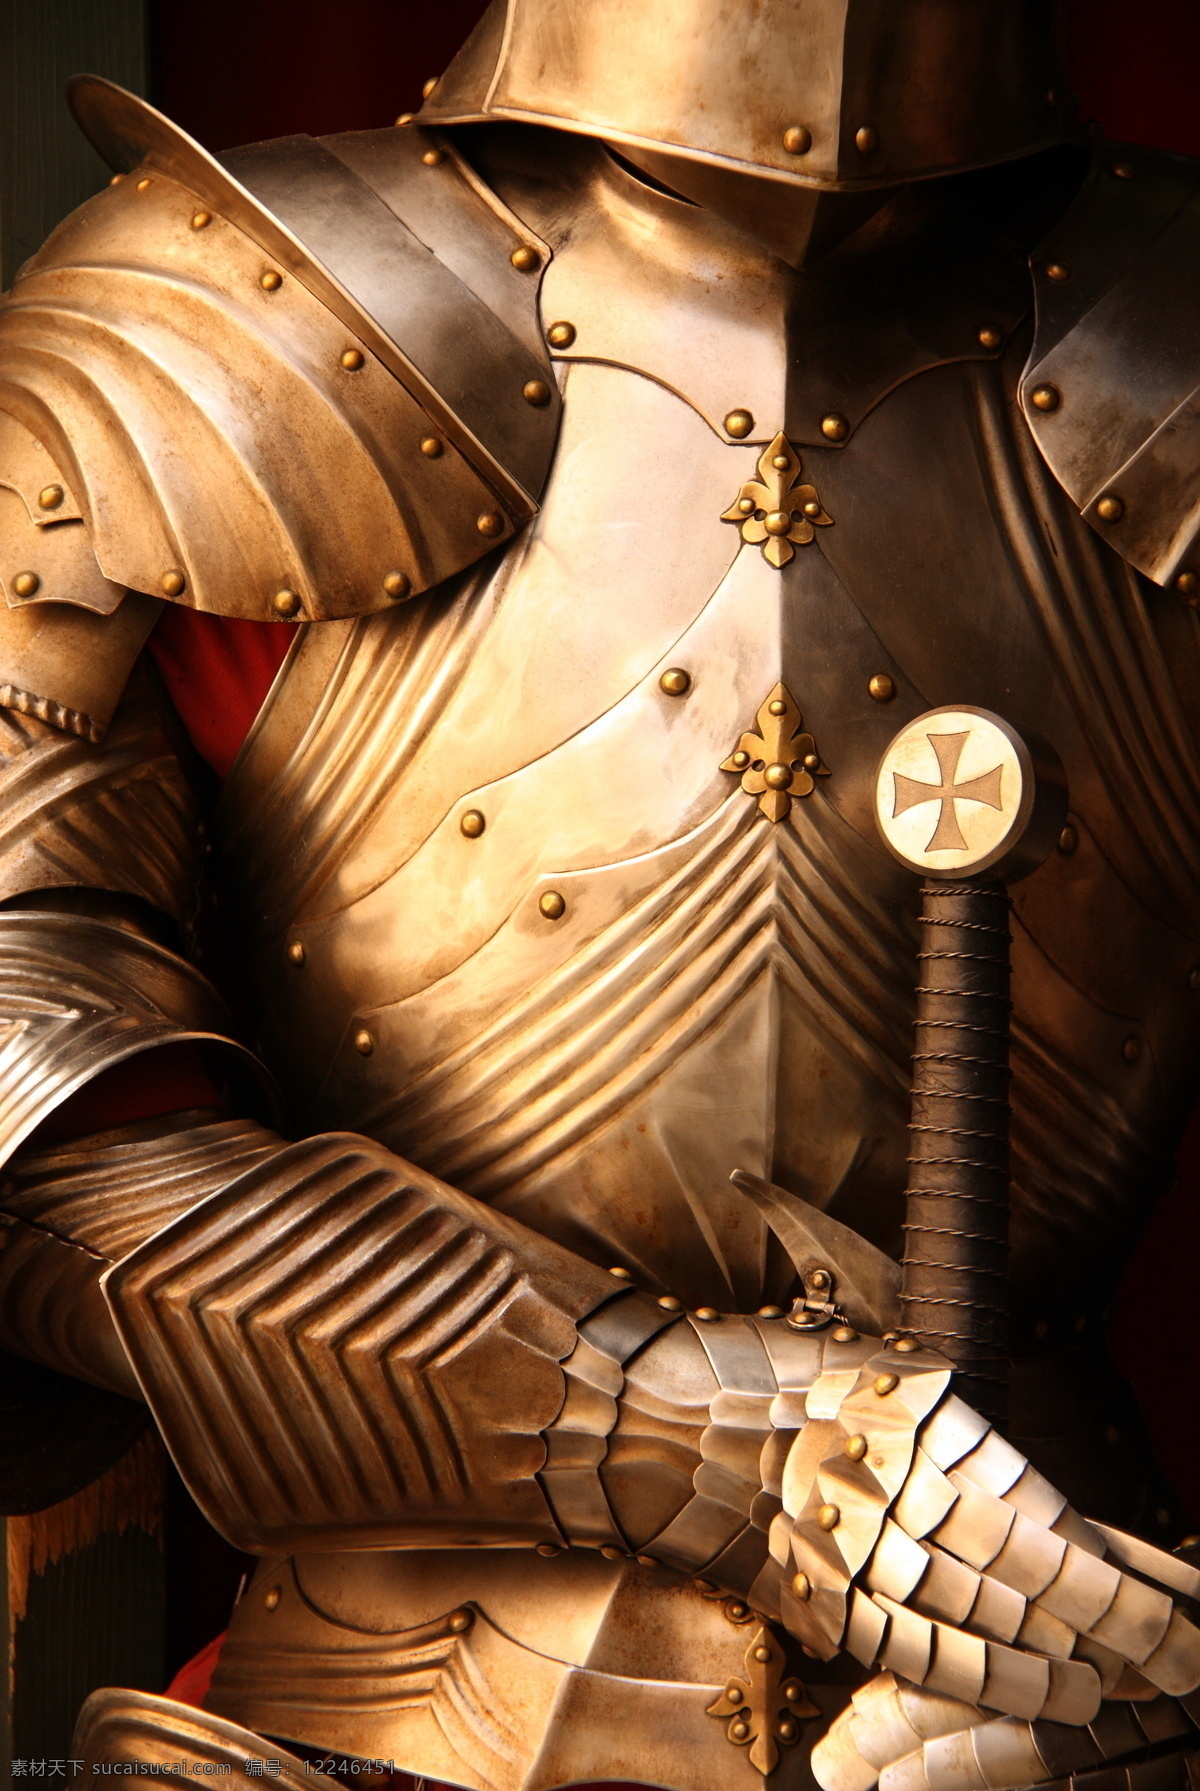 骑士 铠甲 武士 爵士 欧洲古代 欧洲古代战士 剑 盔甲 生活人物 人物图片